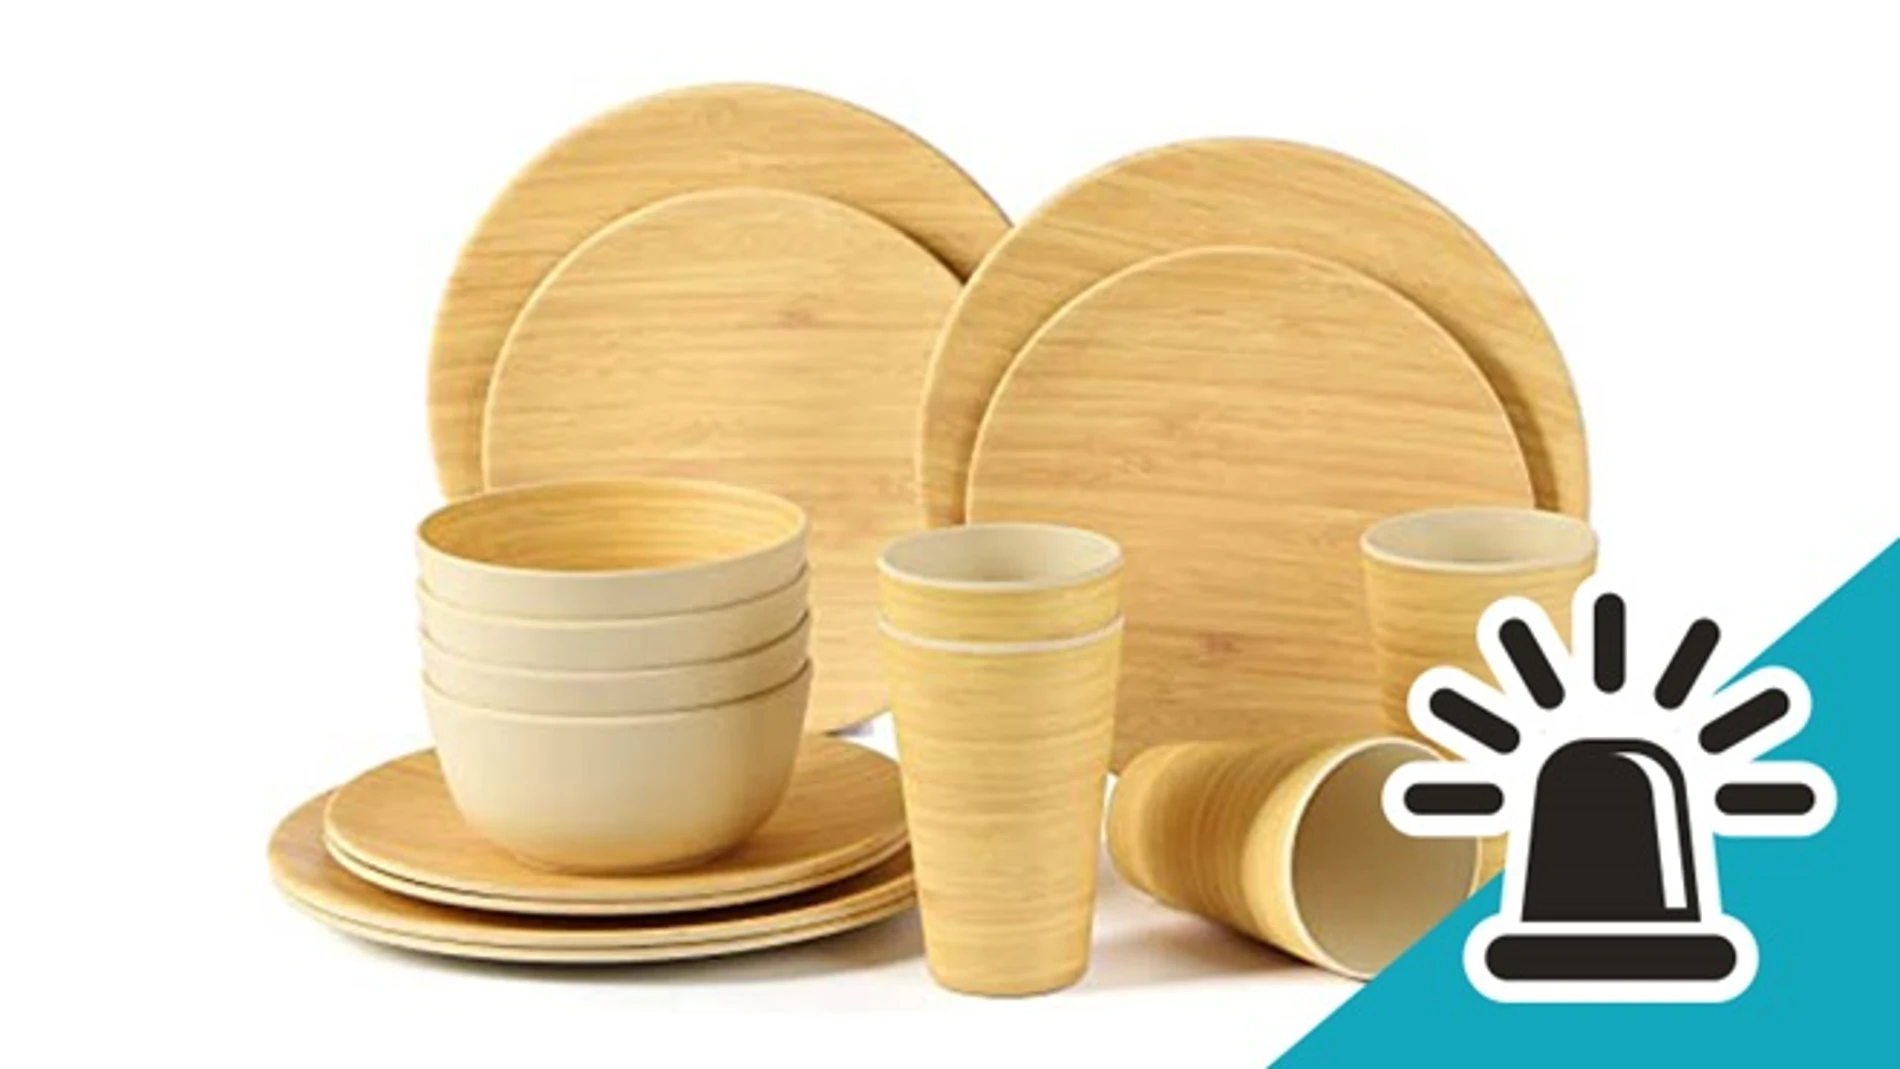 La OCU advierte que los utensilios de plástico con bambú no son aptos para uso alimentario